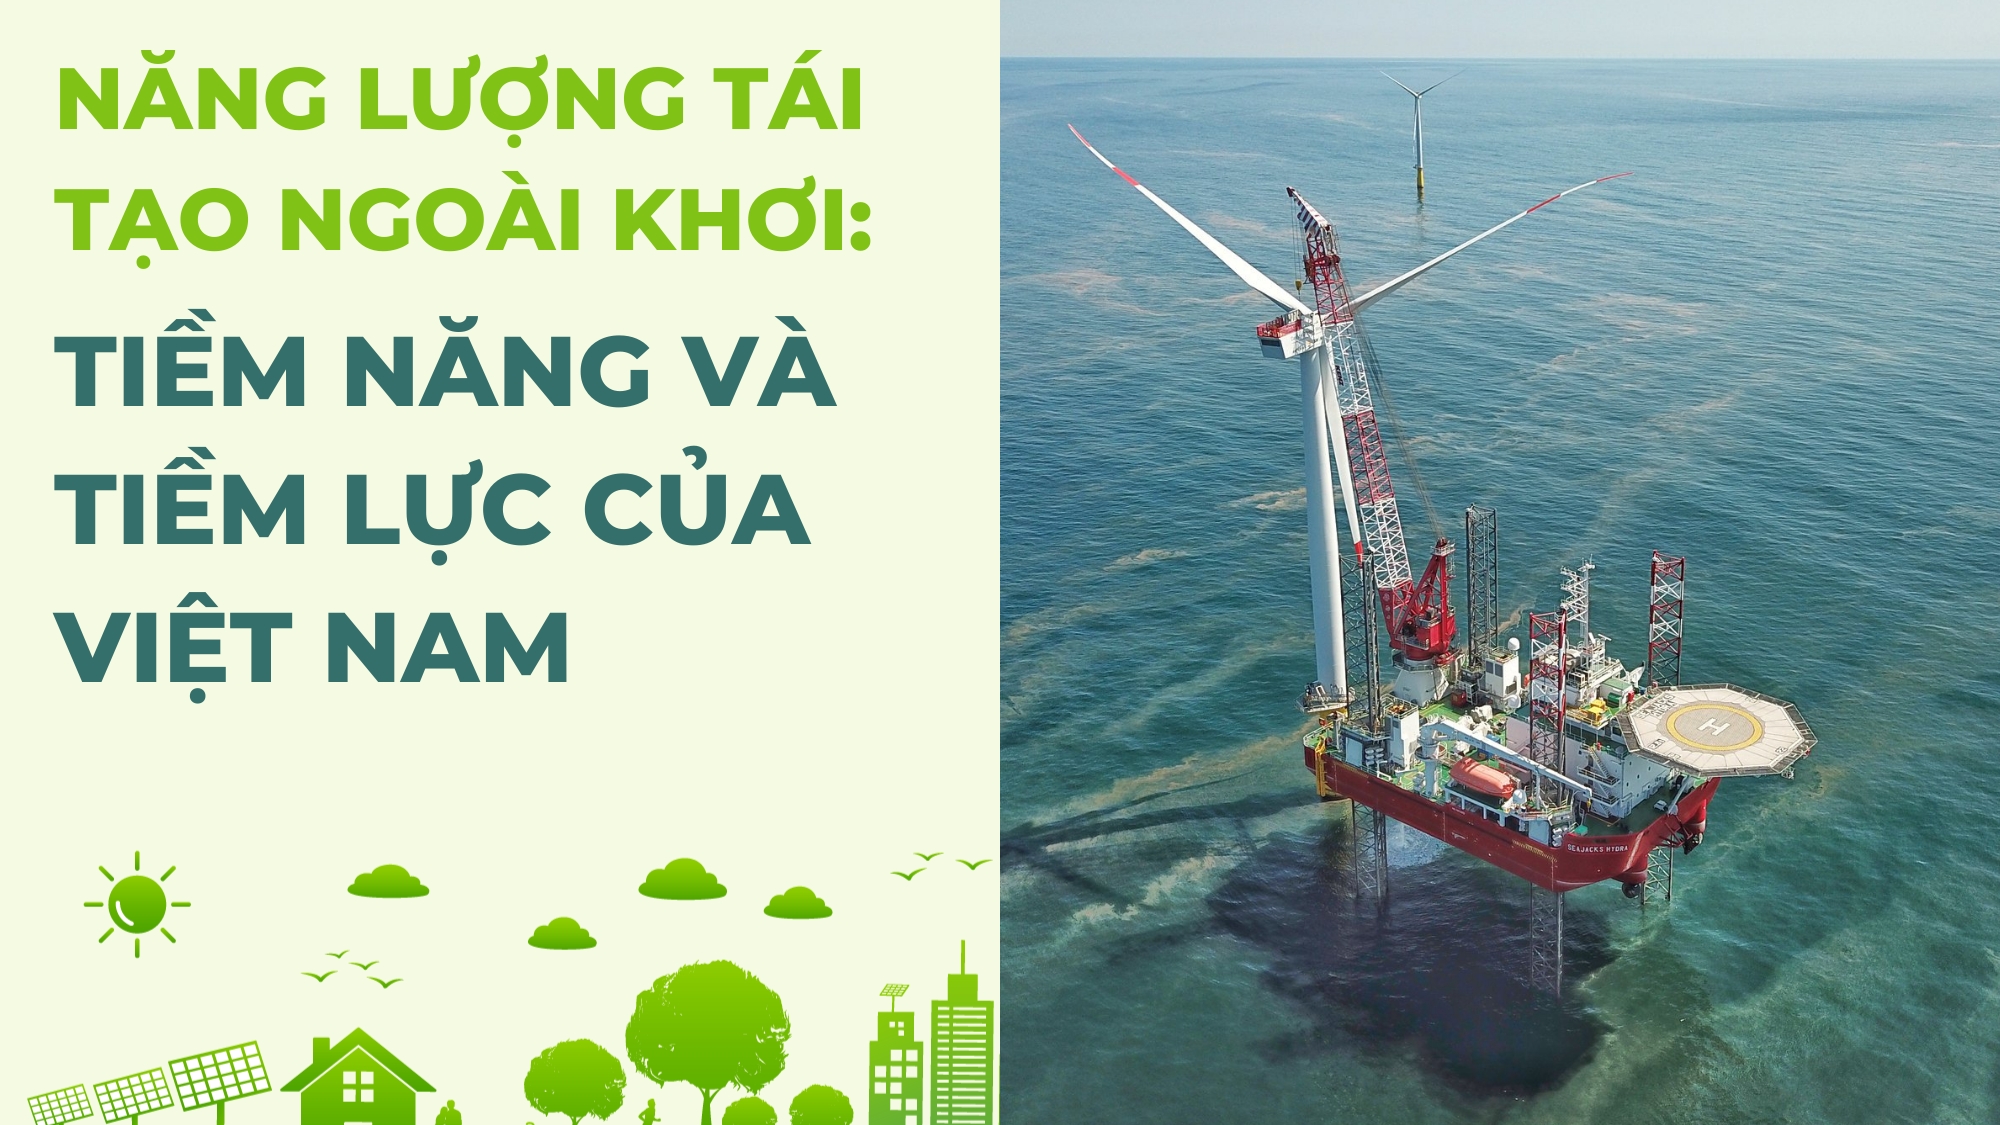 [E-Magazine] Năng lượng tái tạo ngoài khơi: Tiềm năng và tiềm lực của Việt Nam